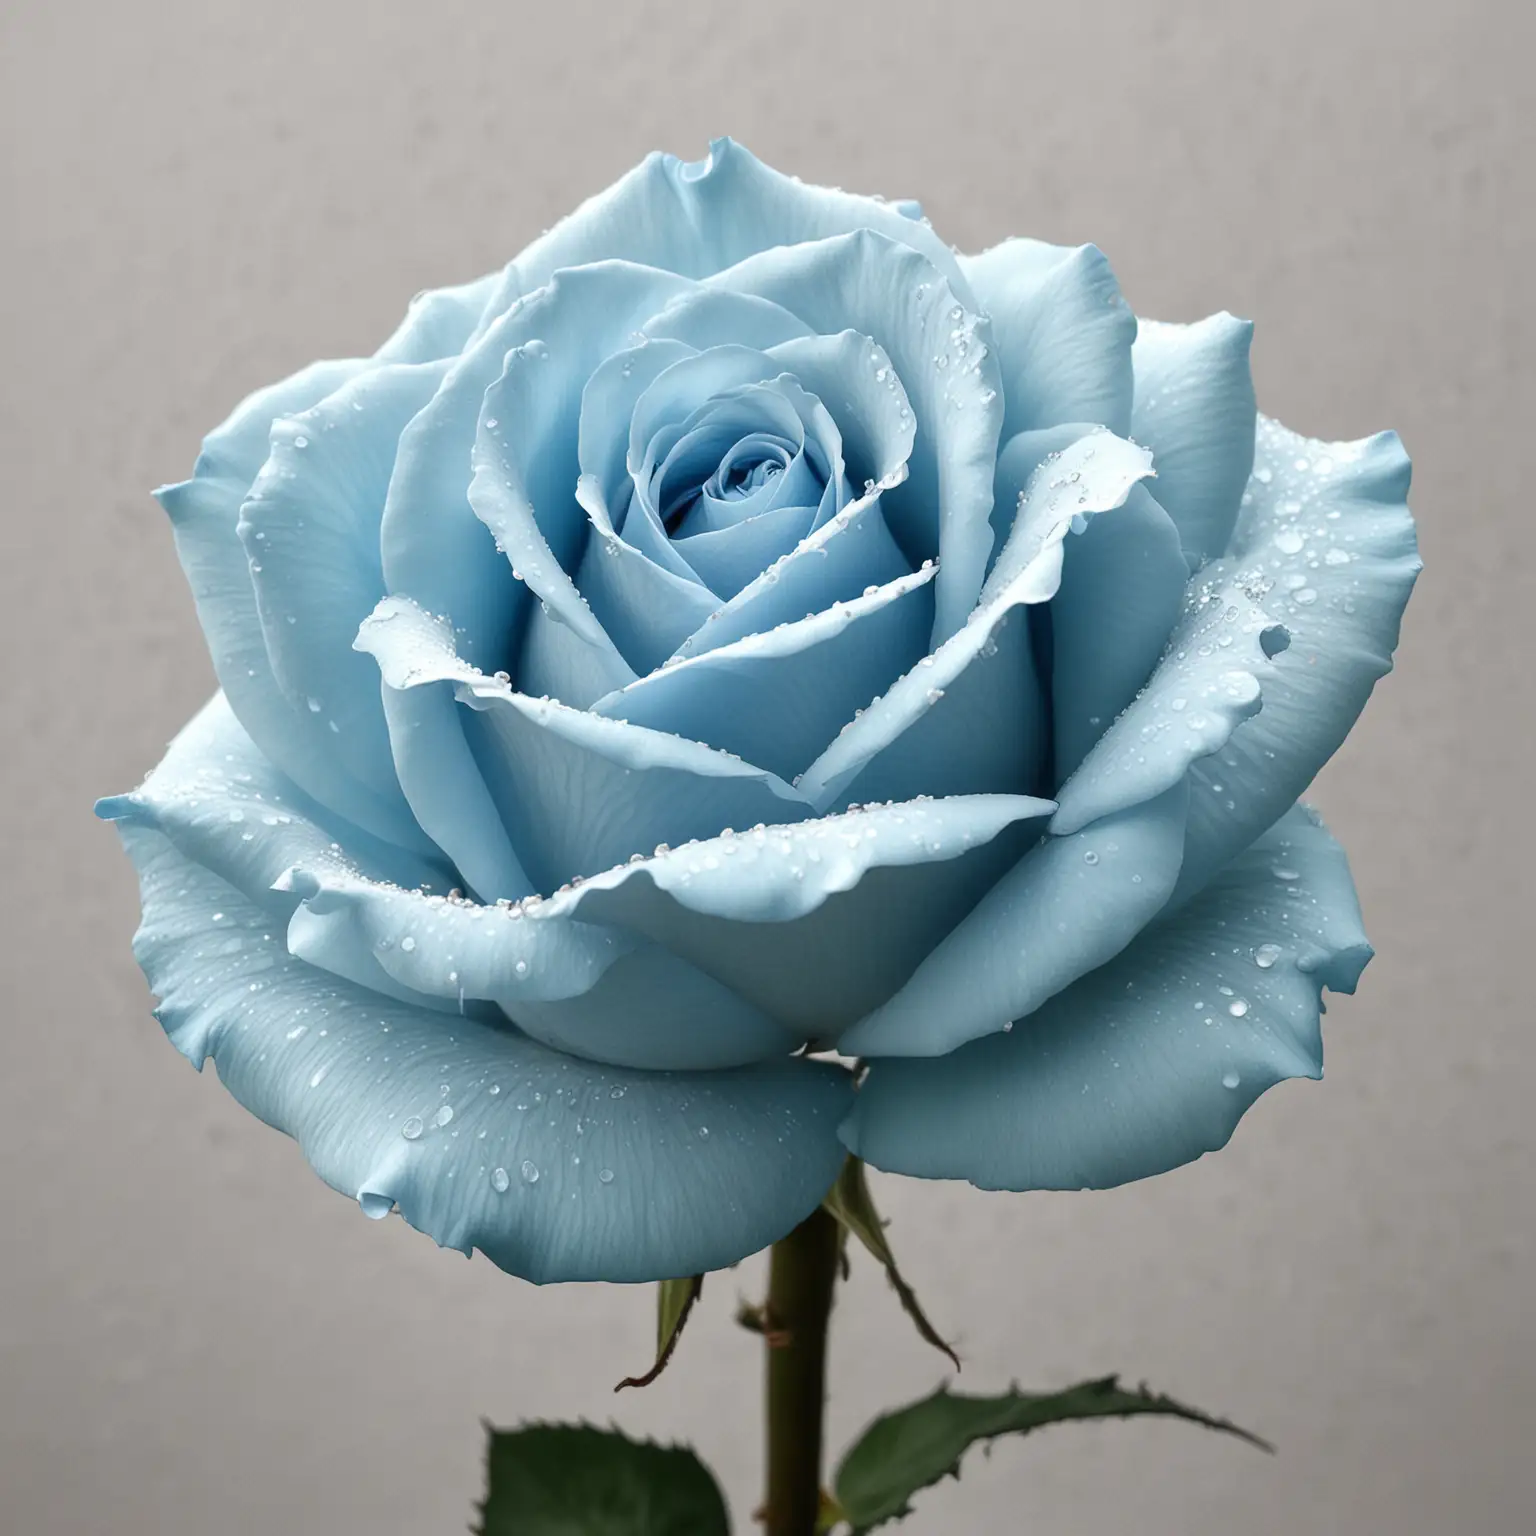 Serene Light Blue Rose in a Crystal Vase